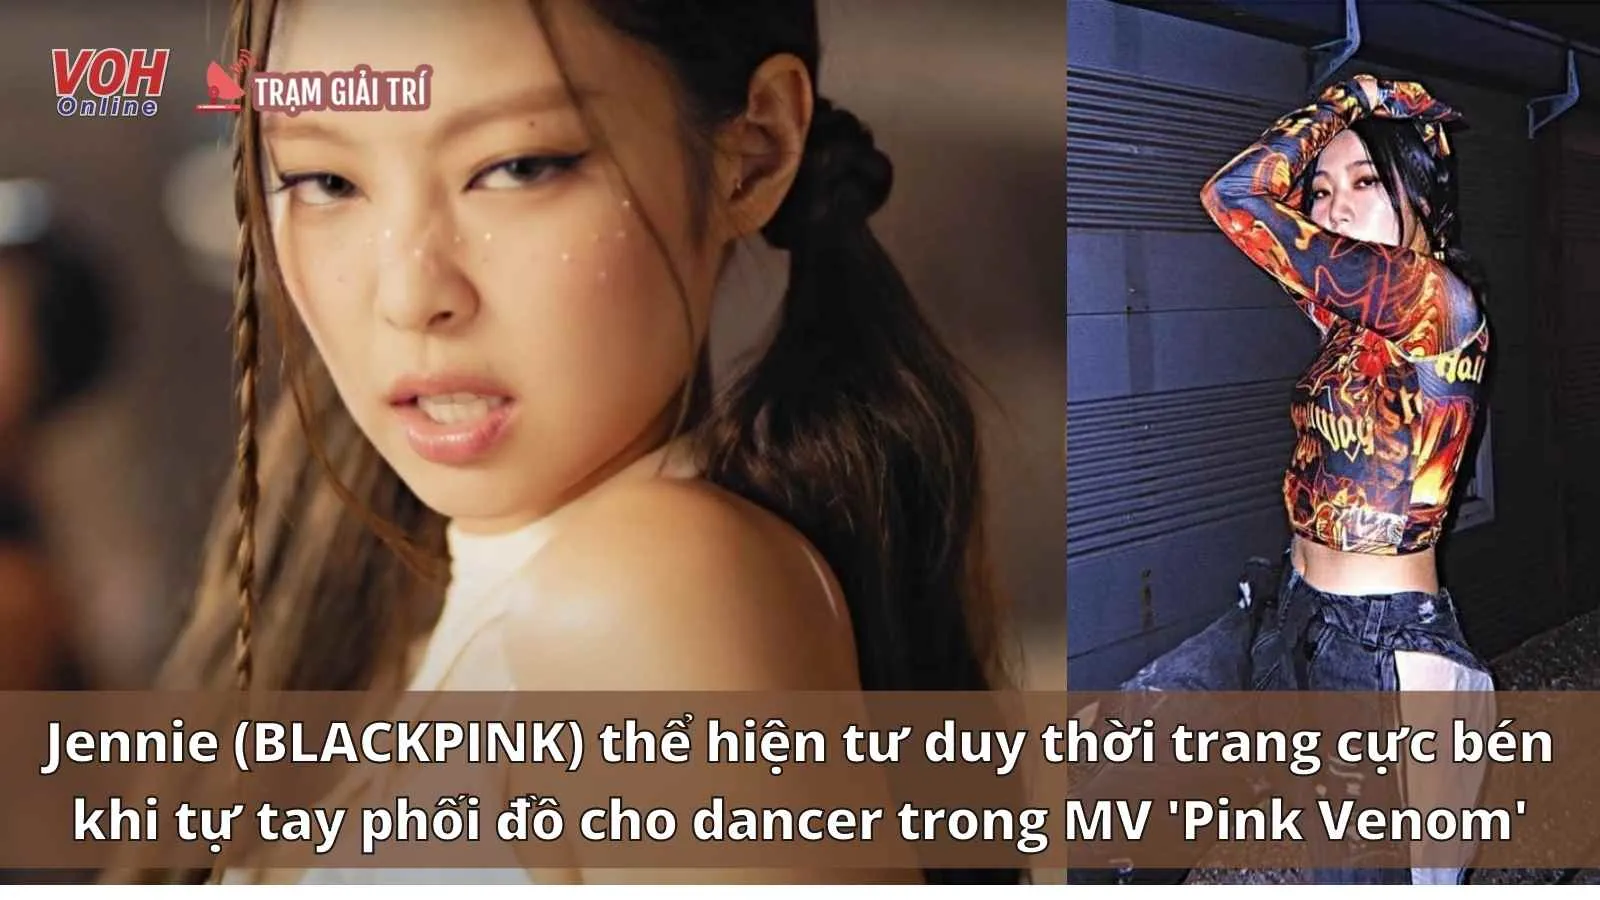 Jennie BLACKPINK tự tay phối đồ cho dancer trong MV Pink Venom